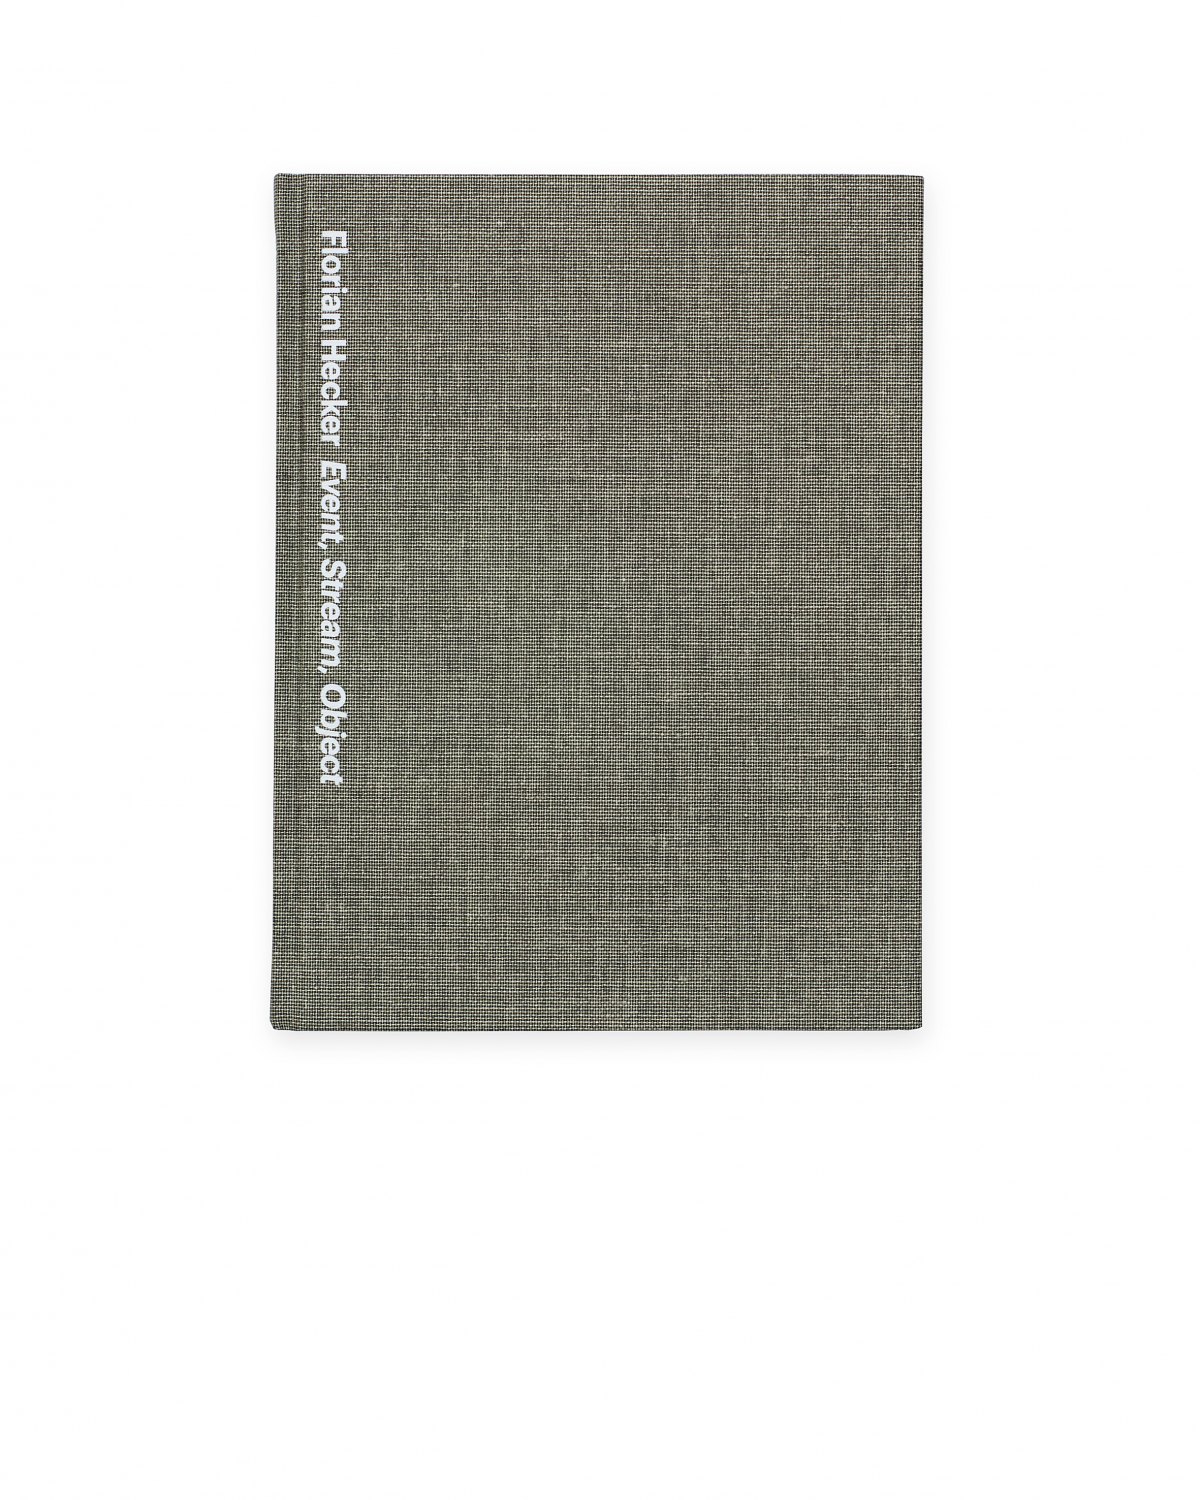 Florian Hecker. Event, Stream, Object,  ed. by Susanne Gaensheimer, Catalogue, Museum für Moderne Kunst, Frankfurt am Main 2010, 120 p.  ISBN 978-3-86560-862-8